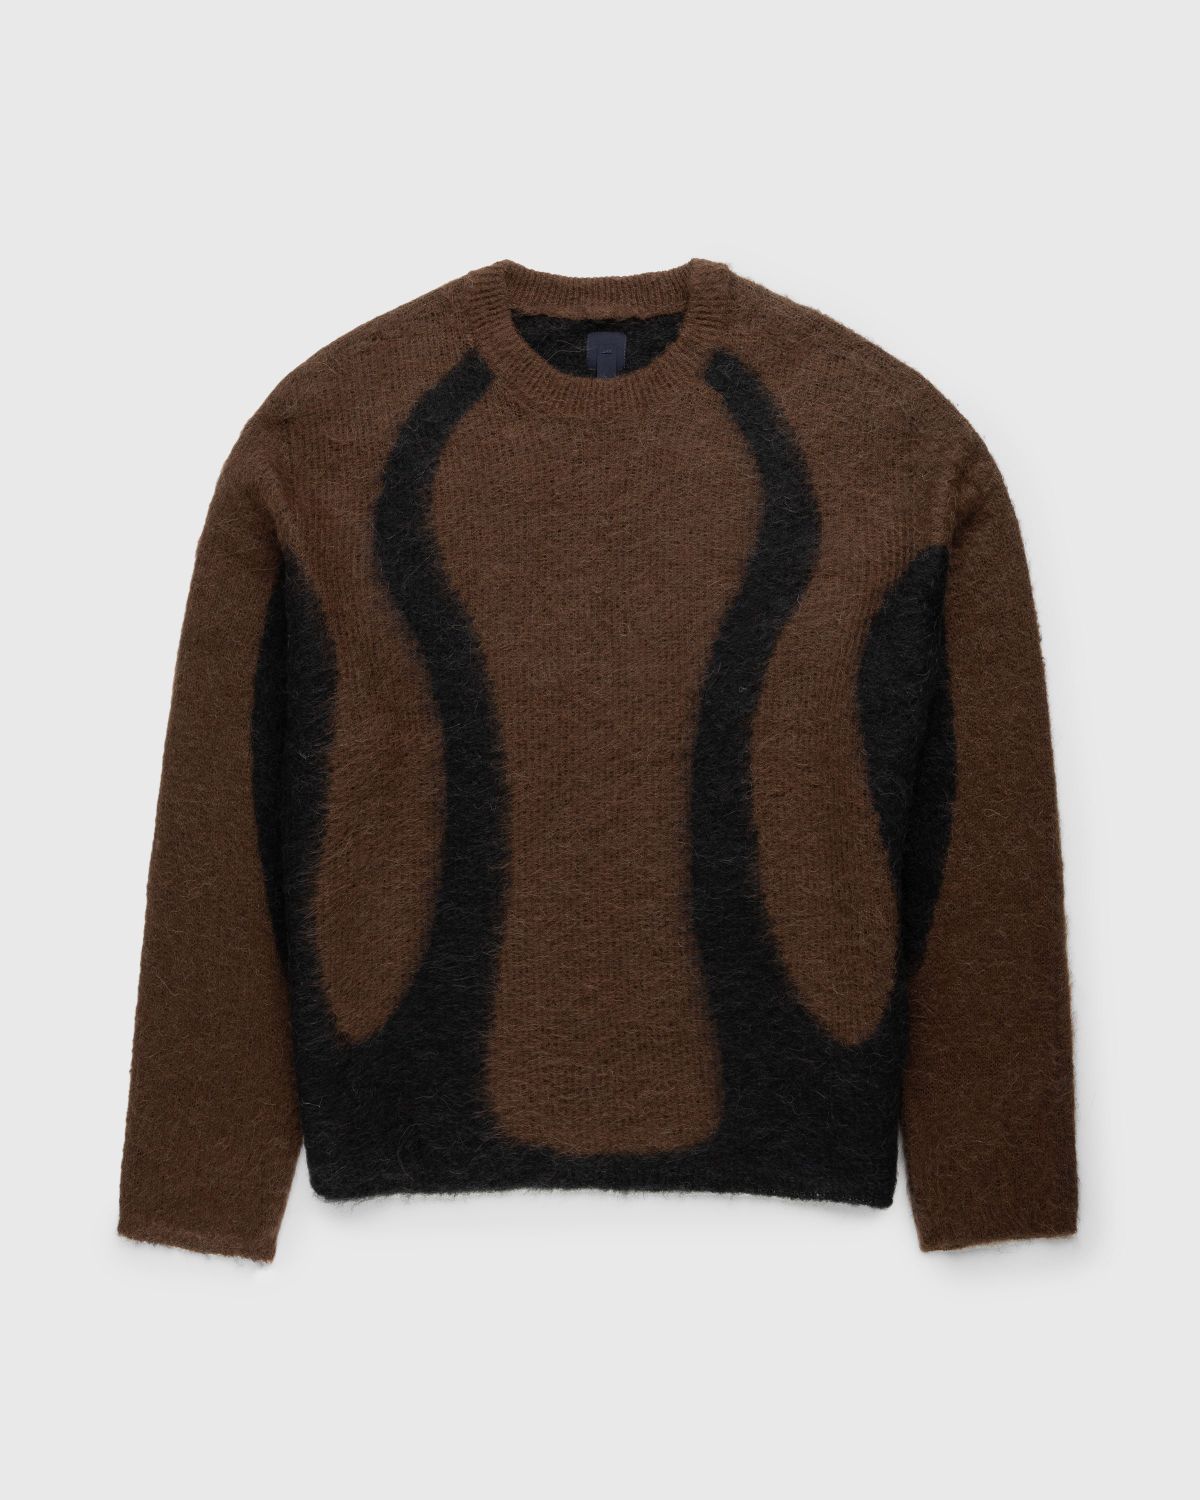 _J.L-A.L_ – Liquid Alpaca Sweater Black - Knitwear - Black - Image 1